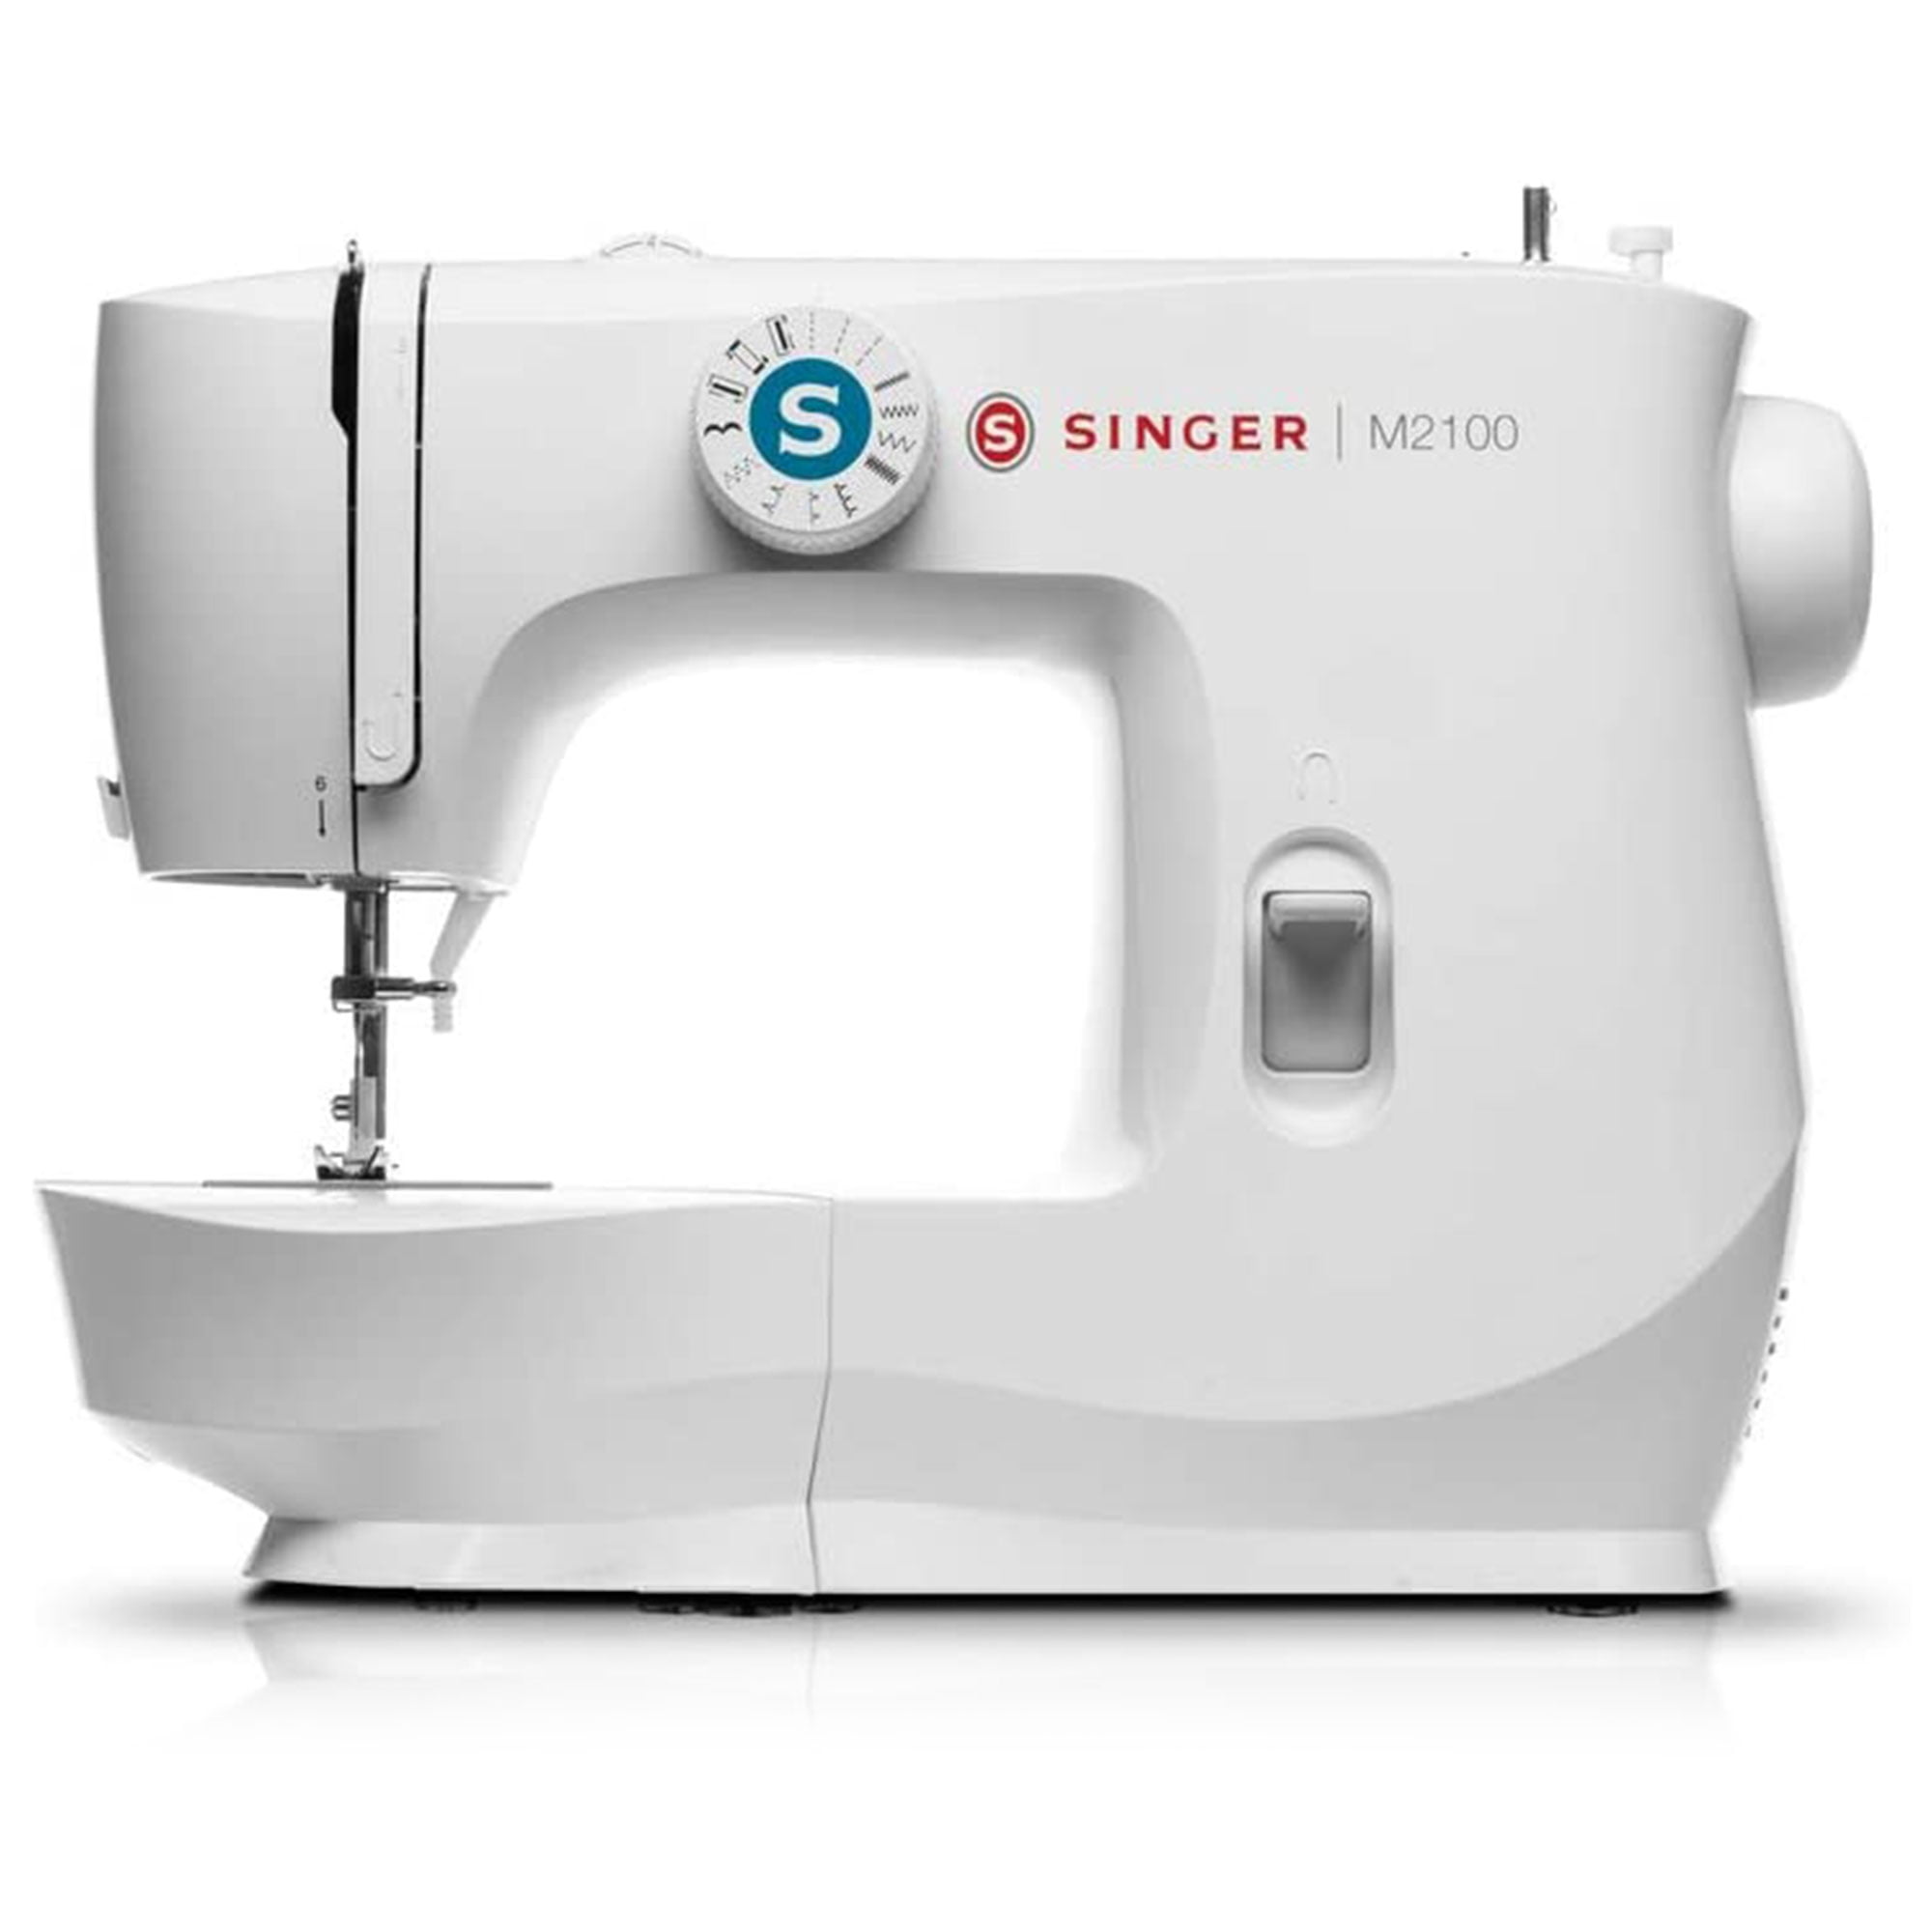 M2100 Singer M2100 Sewing Machine -  Singer Sewing